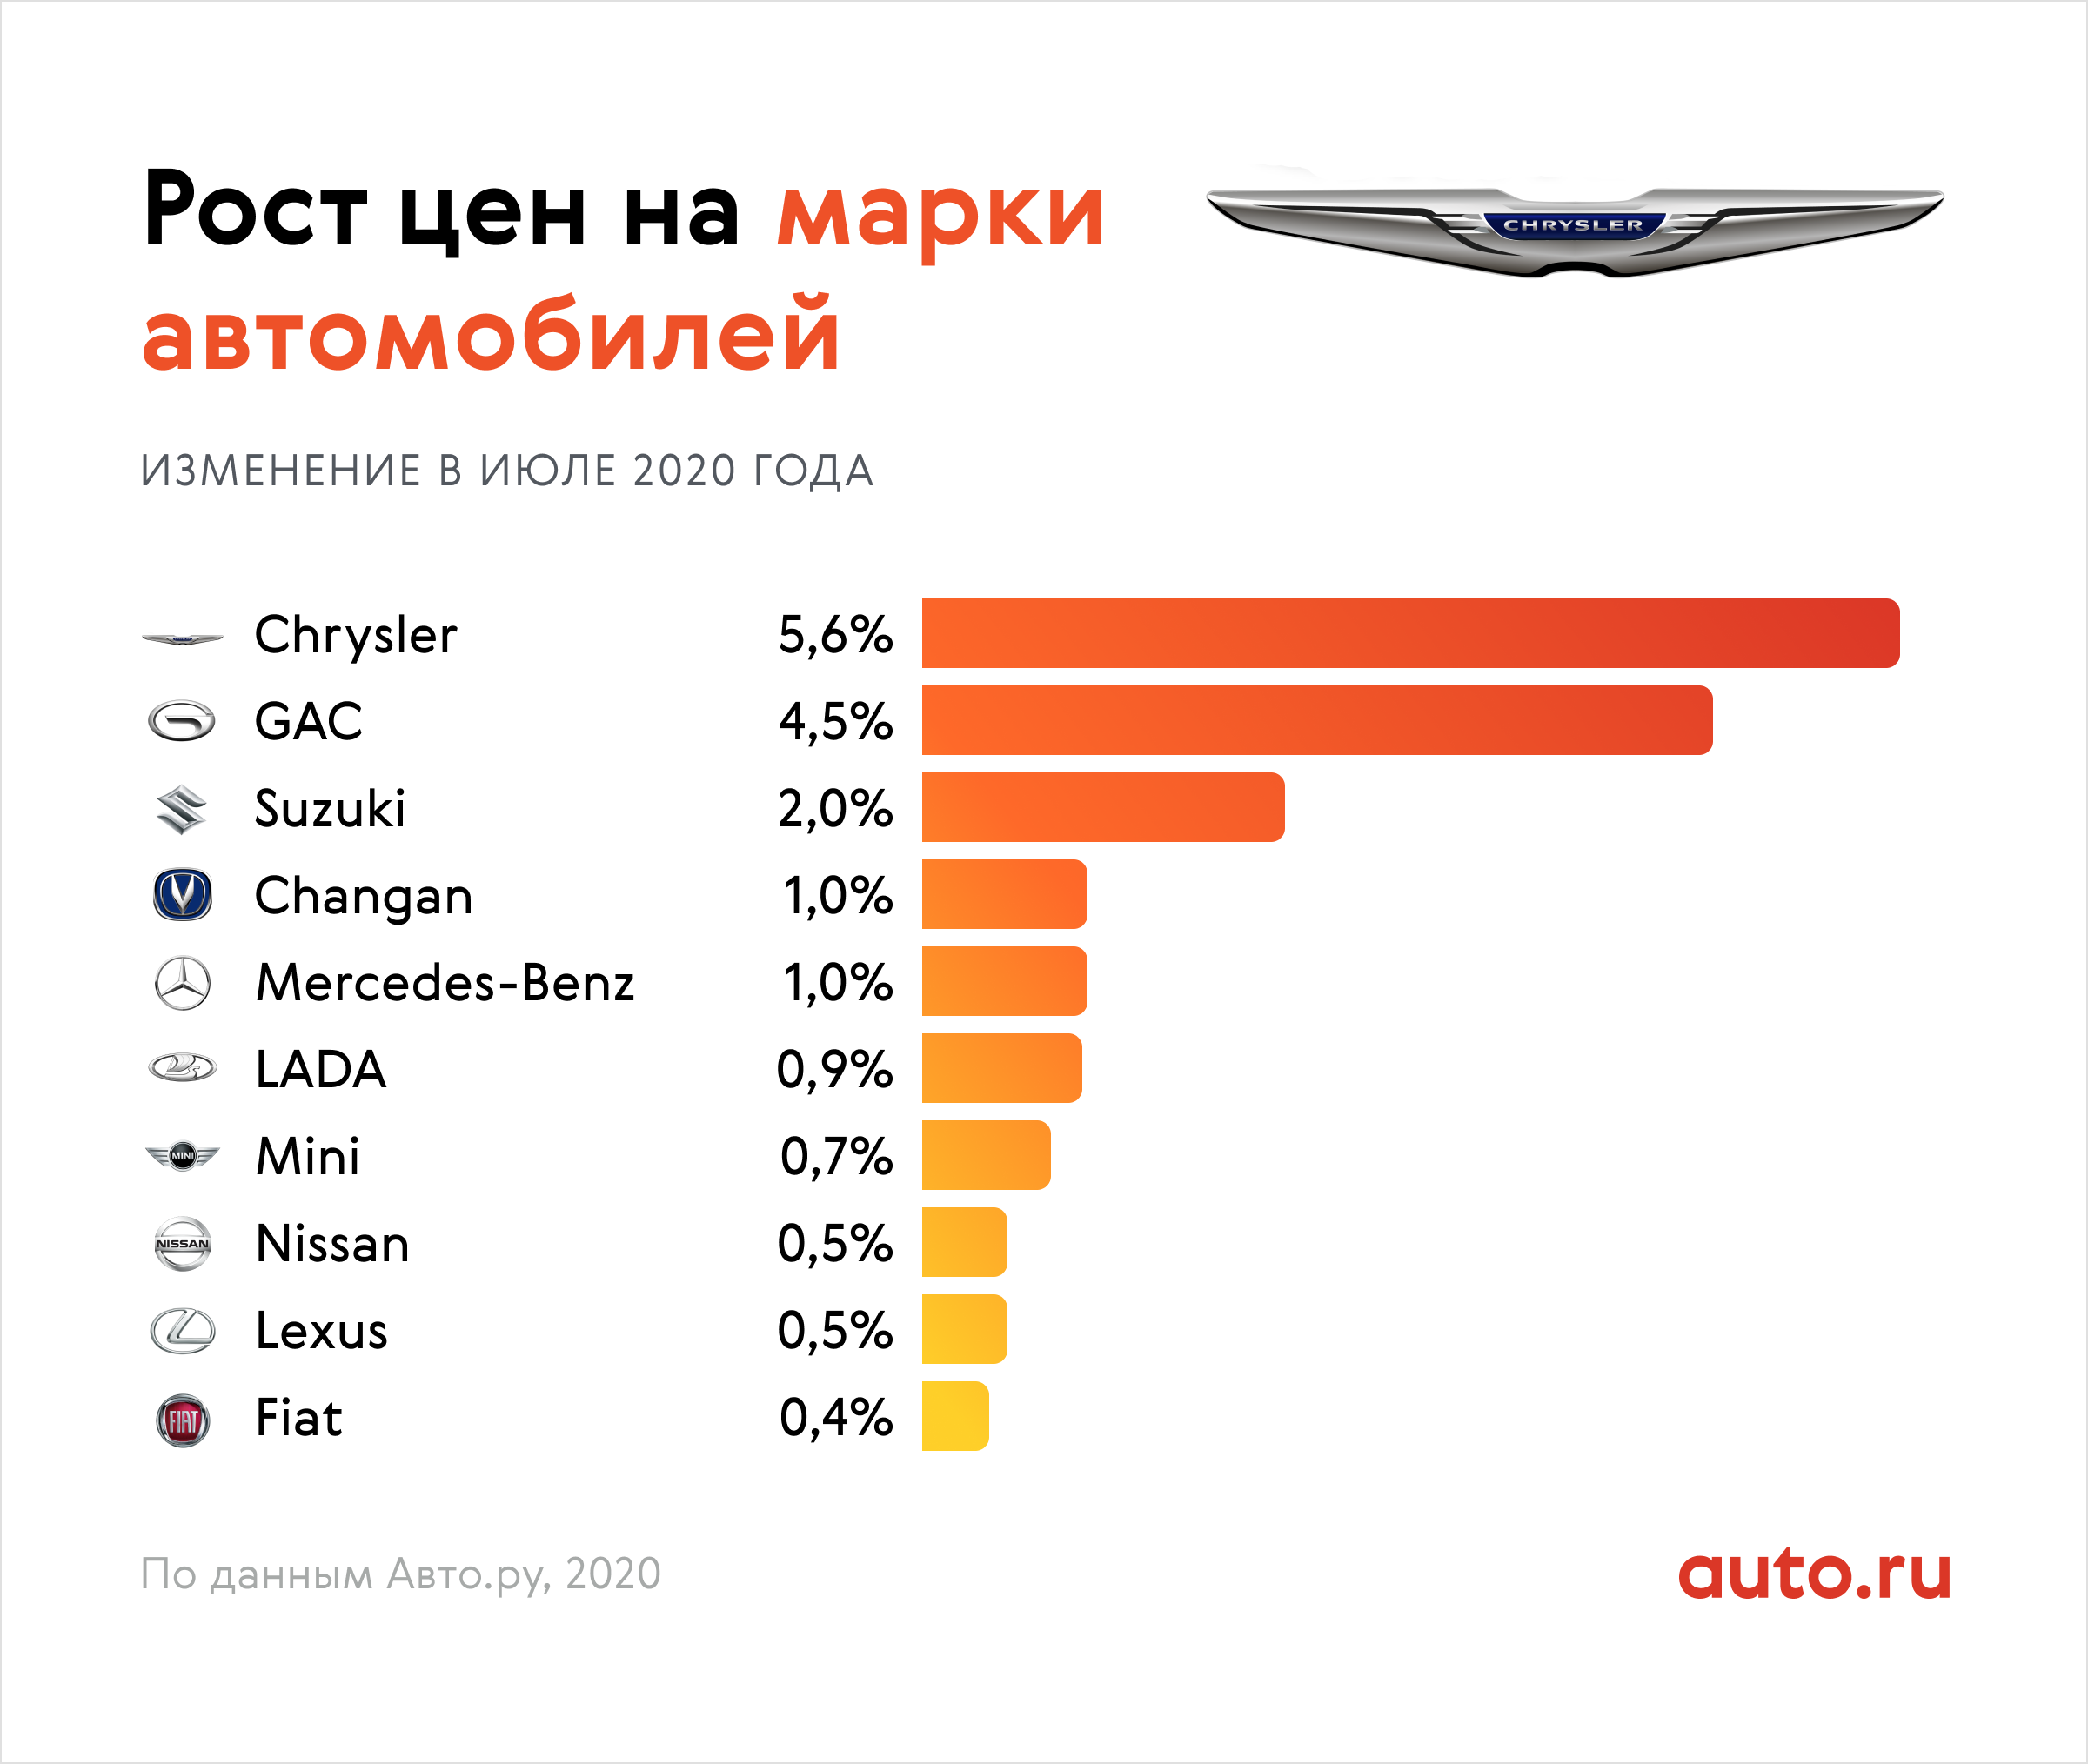 Марки автомобилей в России. Самые популярные марки автомобилей. Самые продаваемые марки автомобилей. Статистика марки автомобилей.